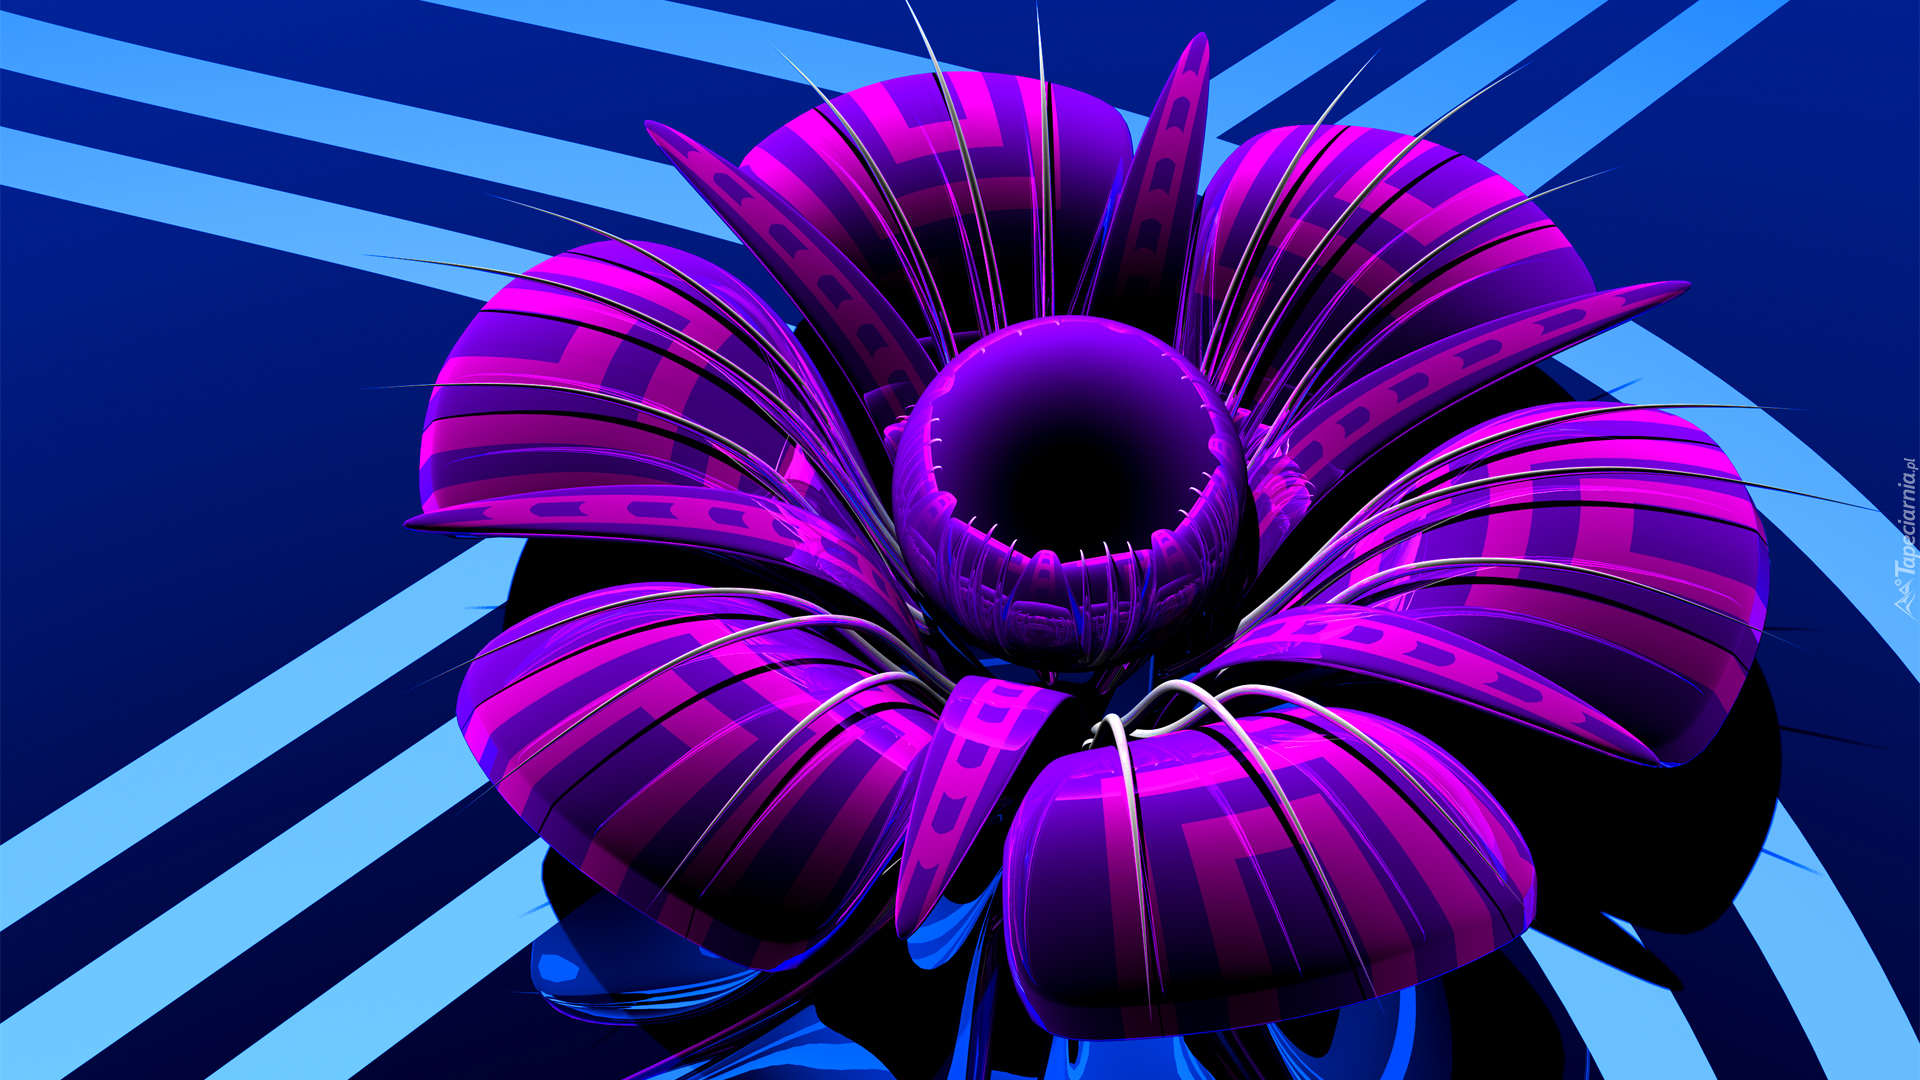 Grafika 3D,  Kwiat